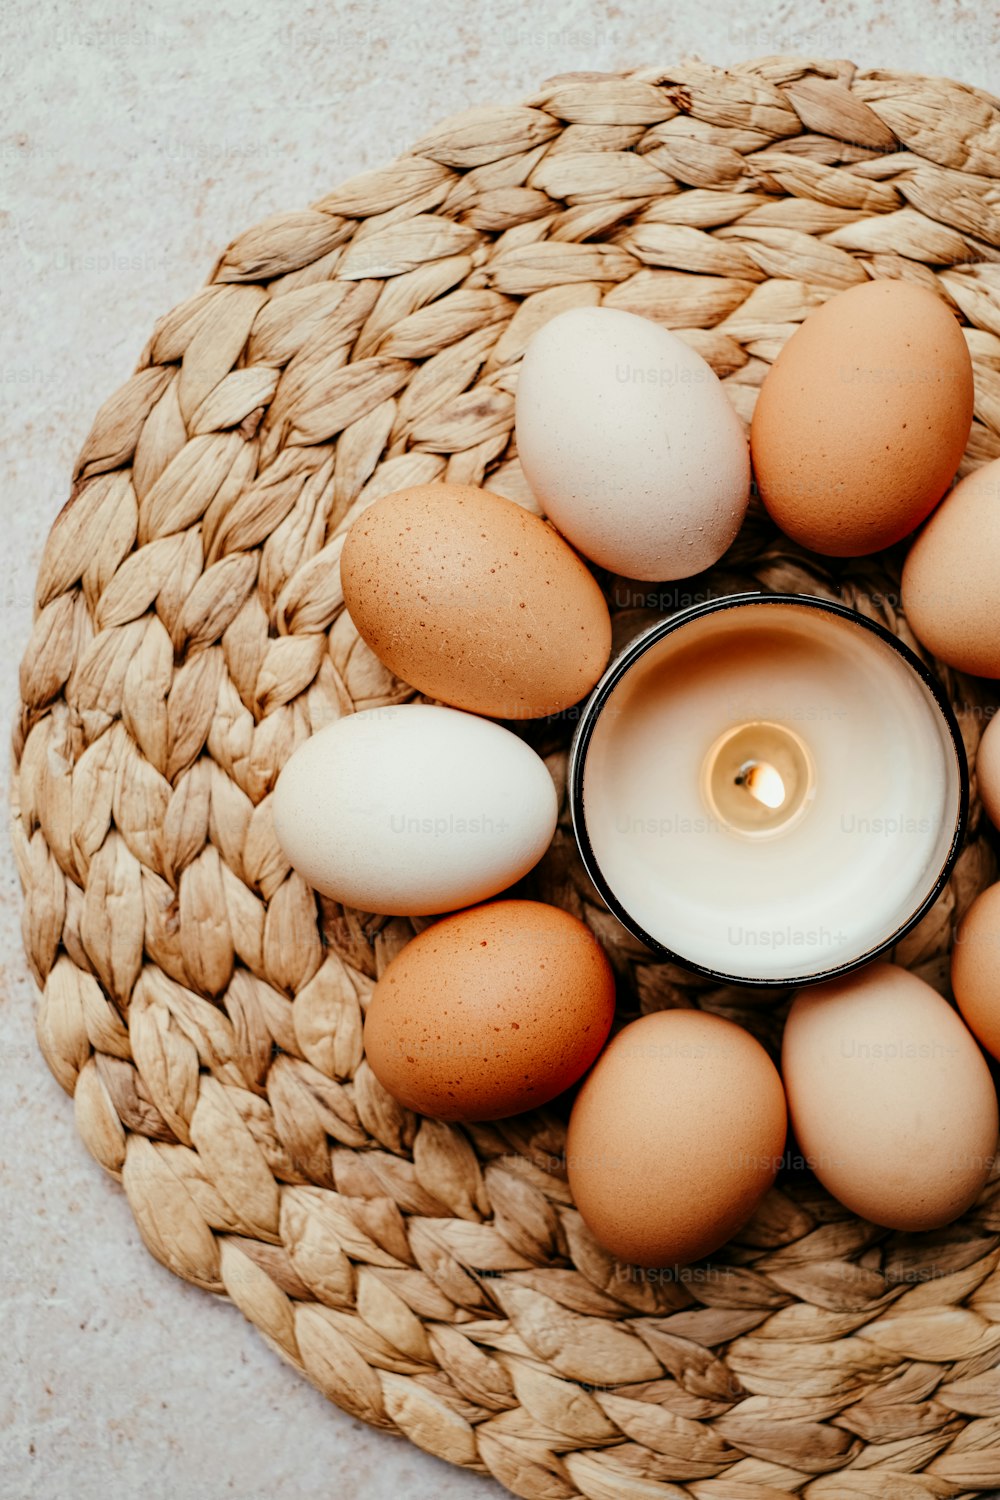 une bougie est entourée d’œufs dans un panier